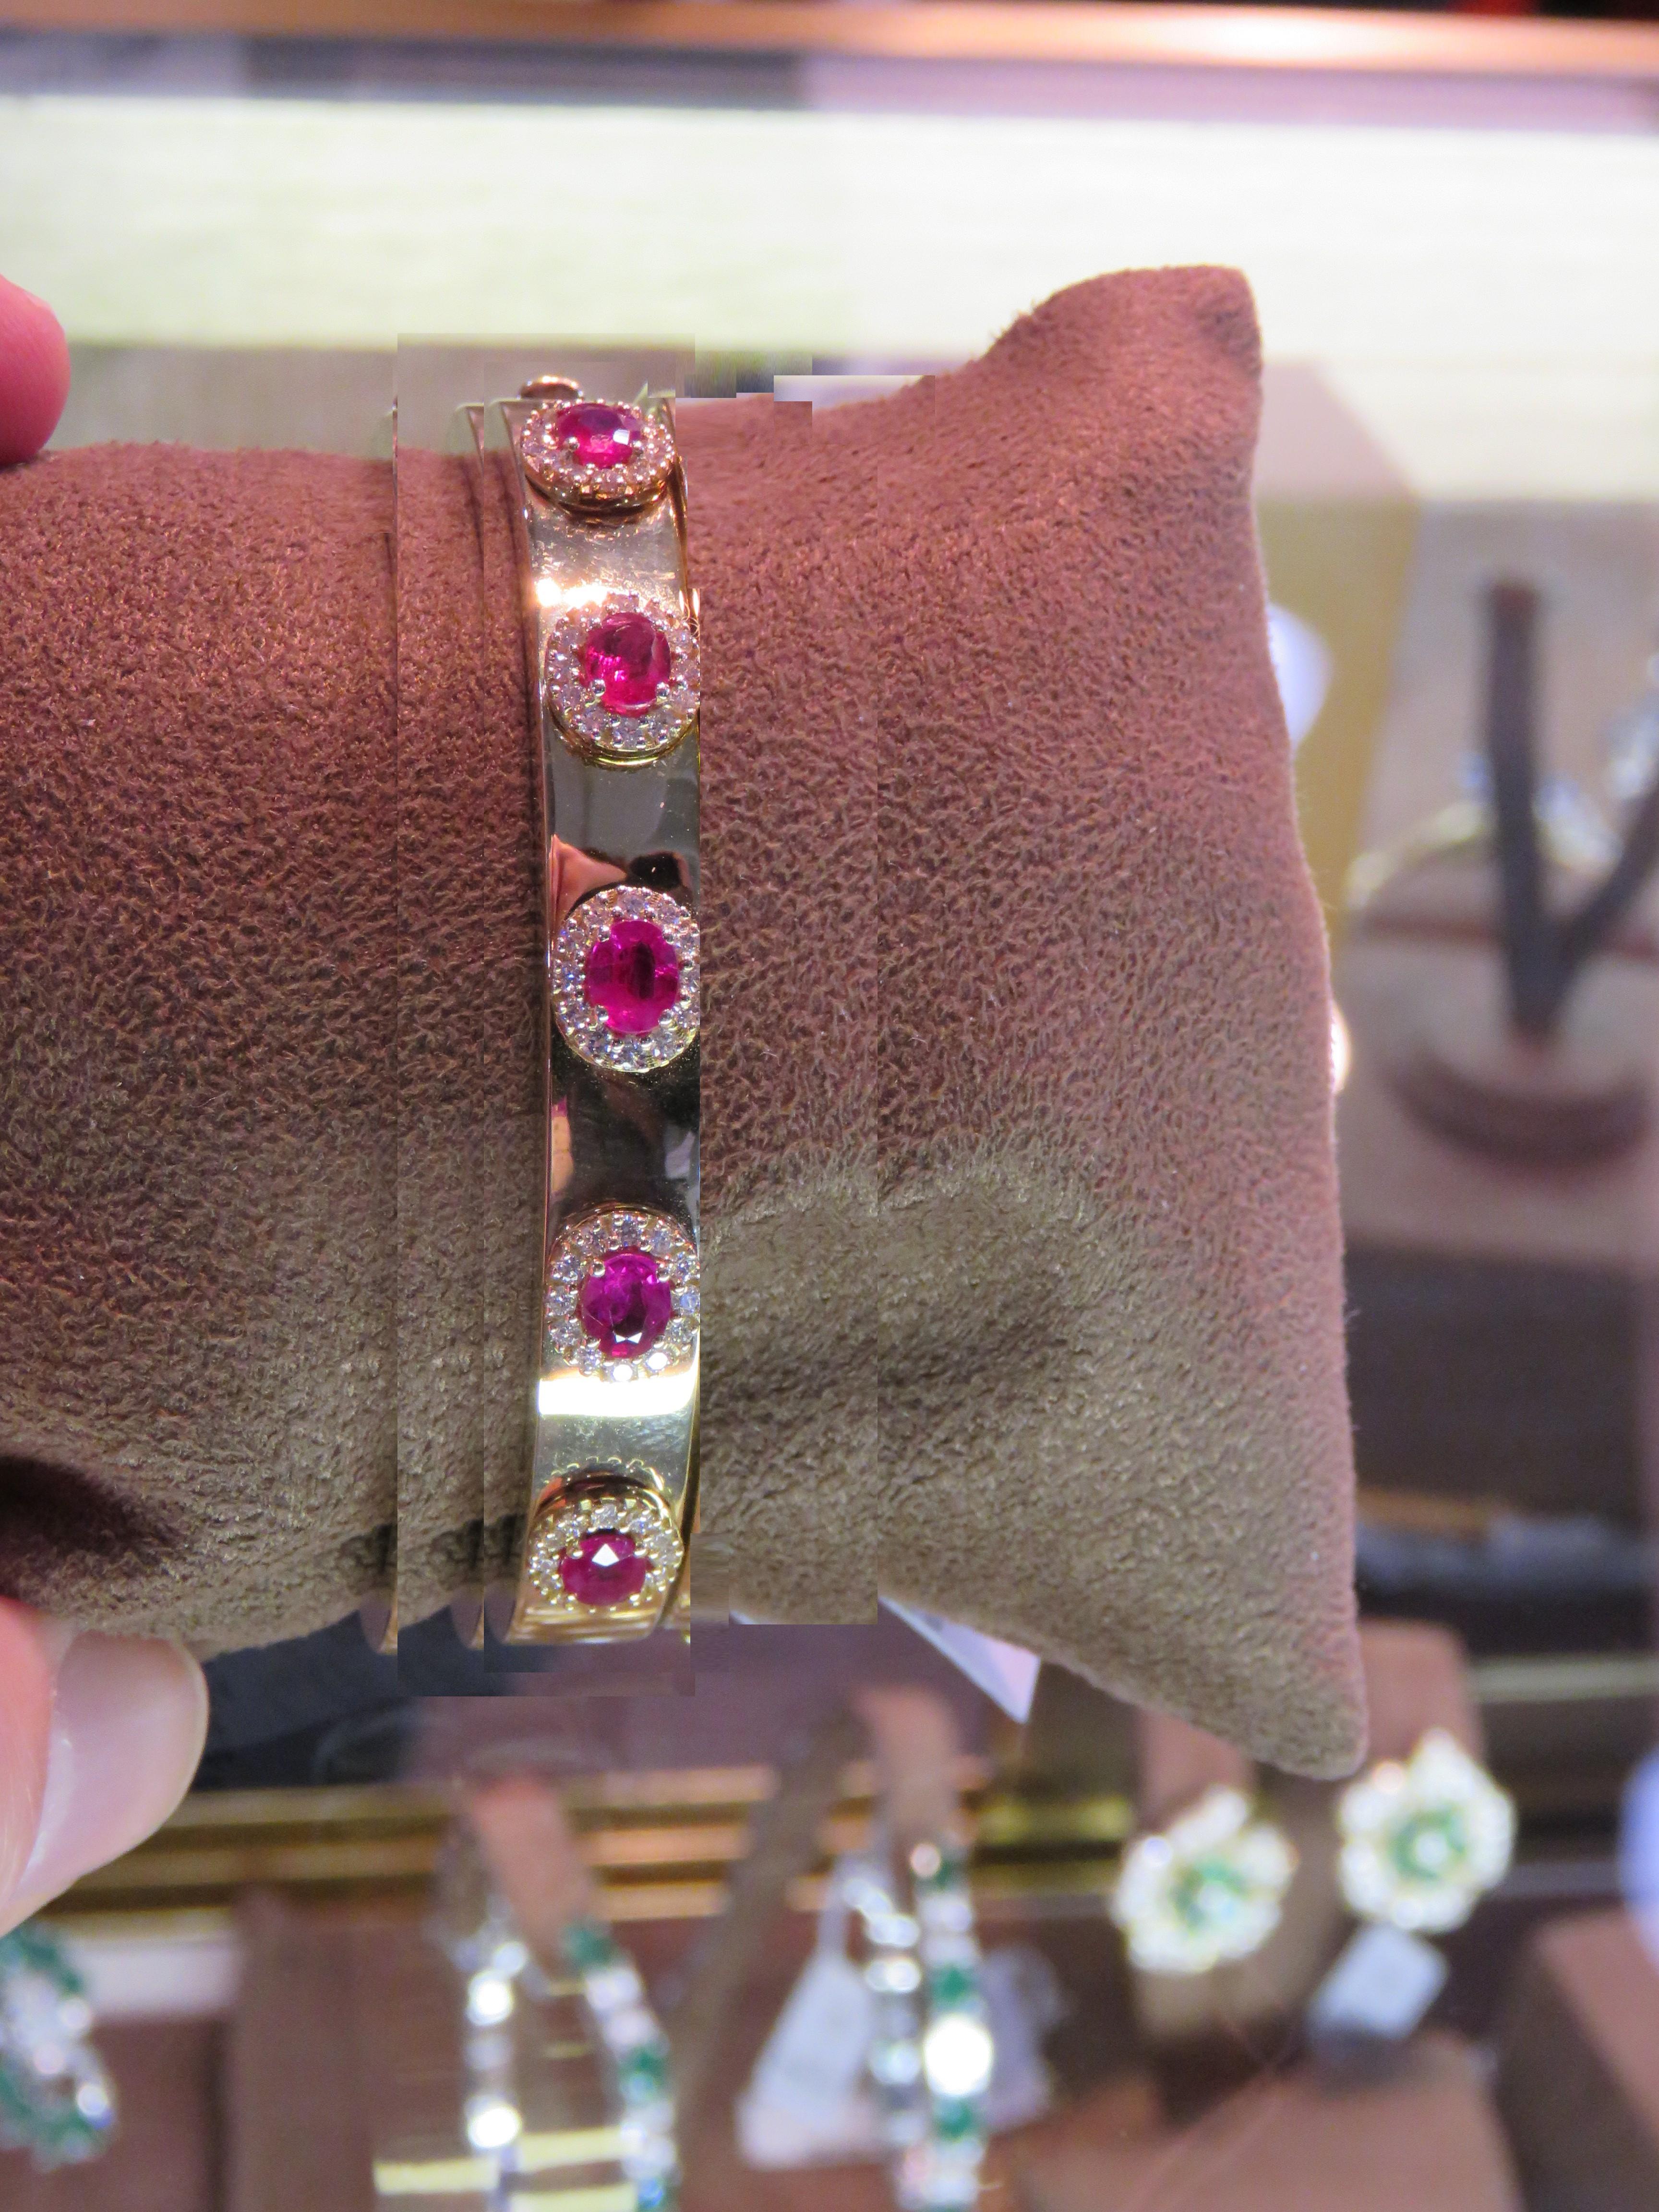 Das folgende Element, das wir anbieten, ist eine seltene prächtige Radiant 18KT Gold Large Rare Gorgeous Fancy Ruby and Diamond Bangle Bracelet. Das Armband besteht aus wunderschönen, glitzernden Rubinen, umgeben von herrlichen Diamanten!!! T.C.W.